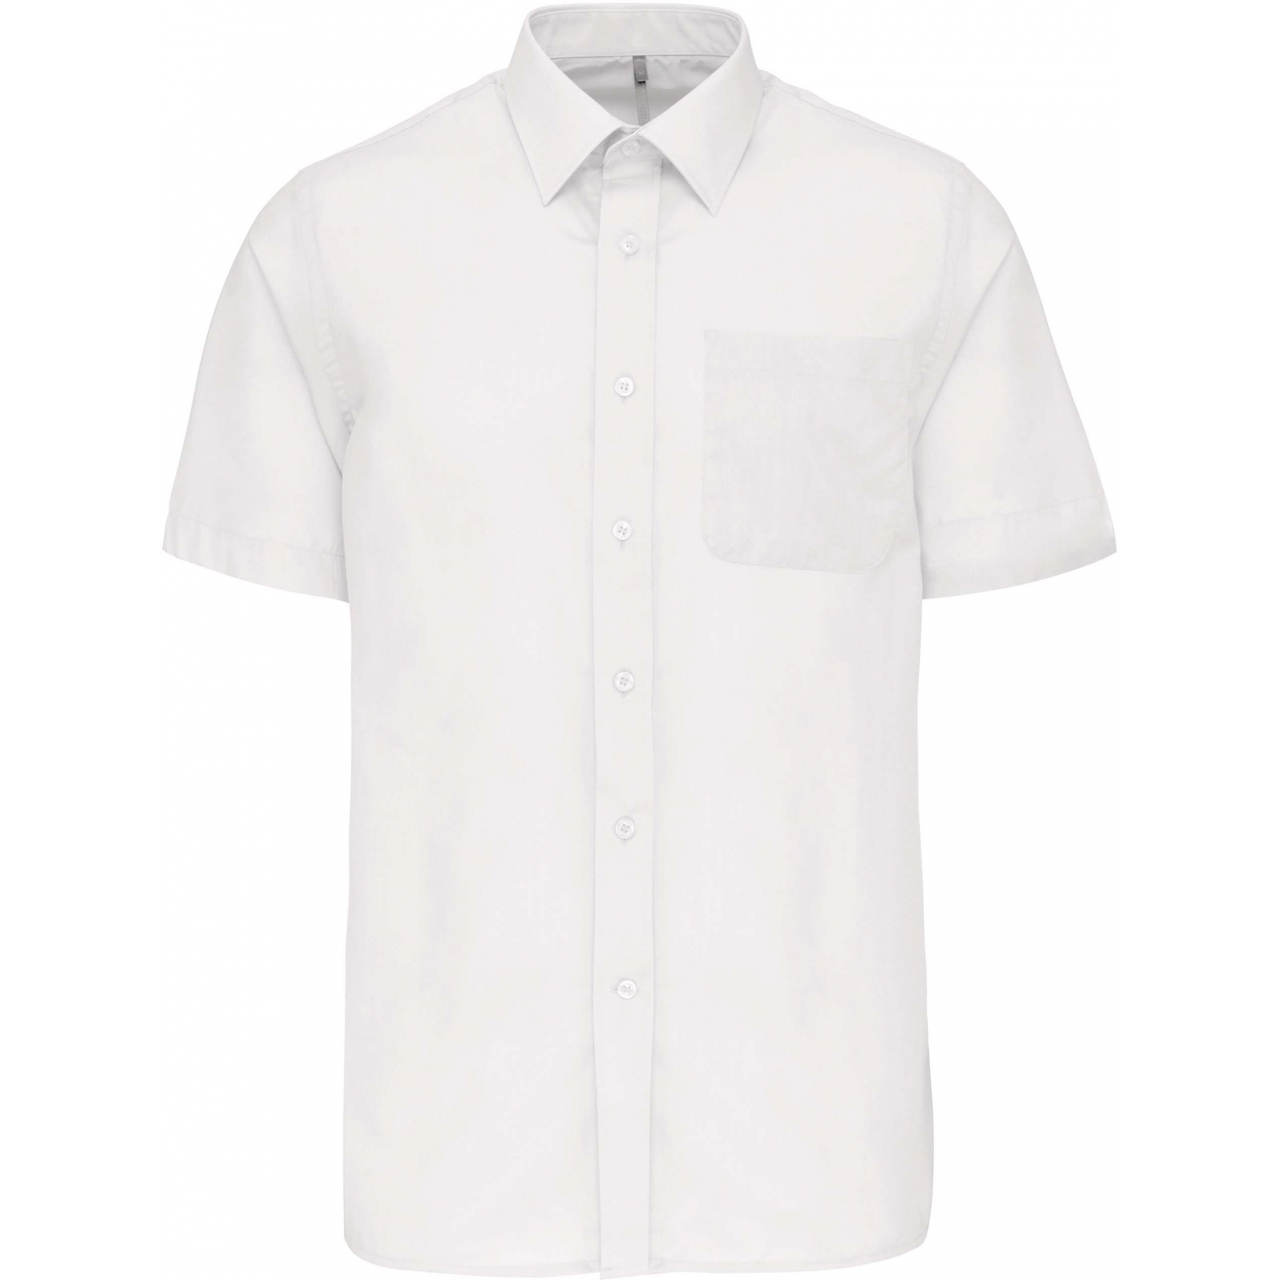 Pánská košile s krátkým rukávem Kariban ACE - bílá, M